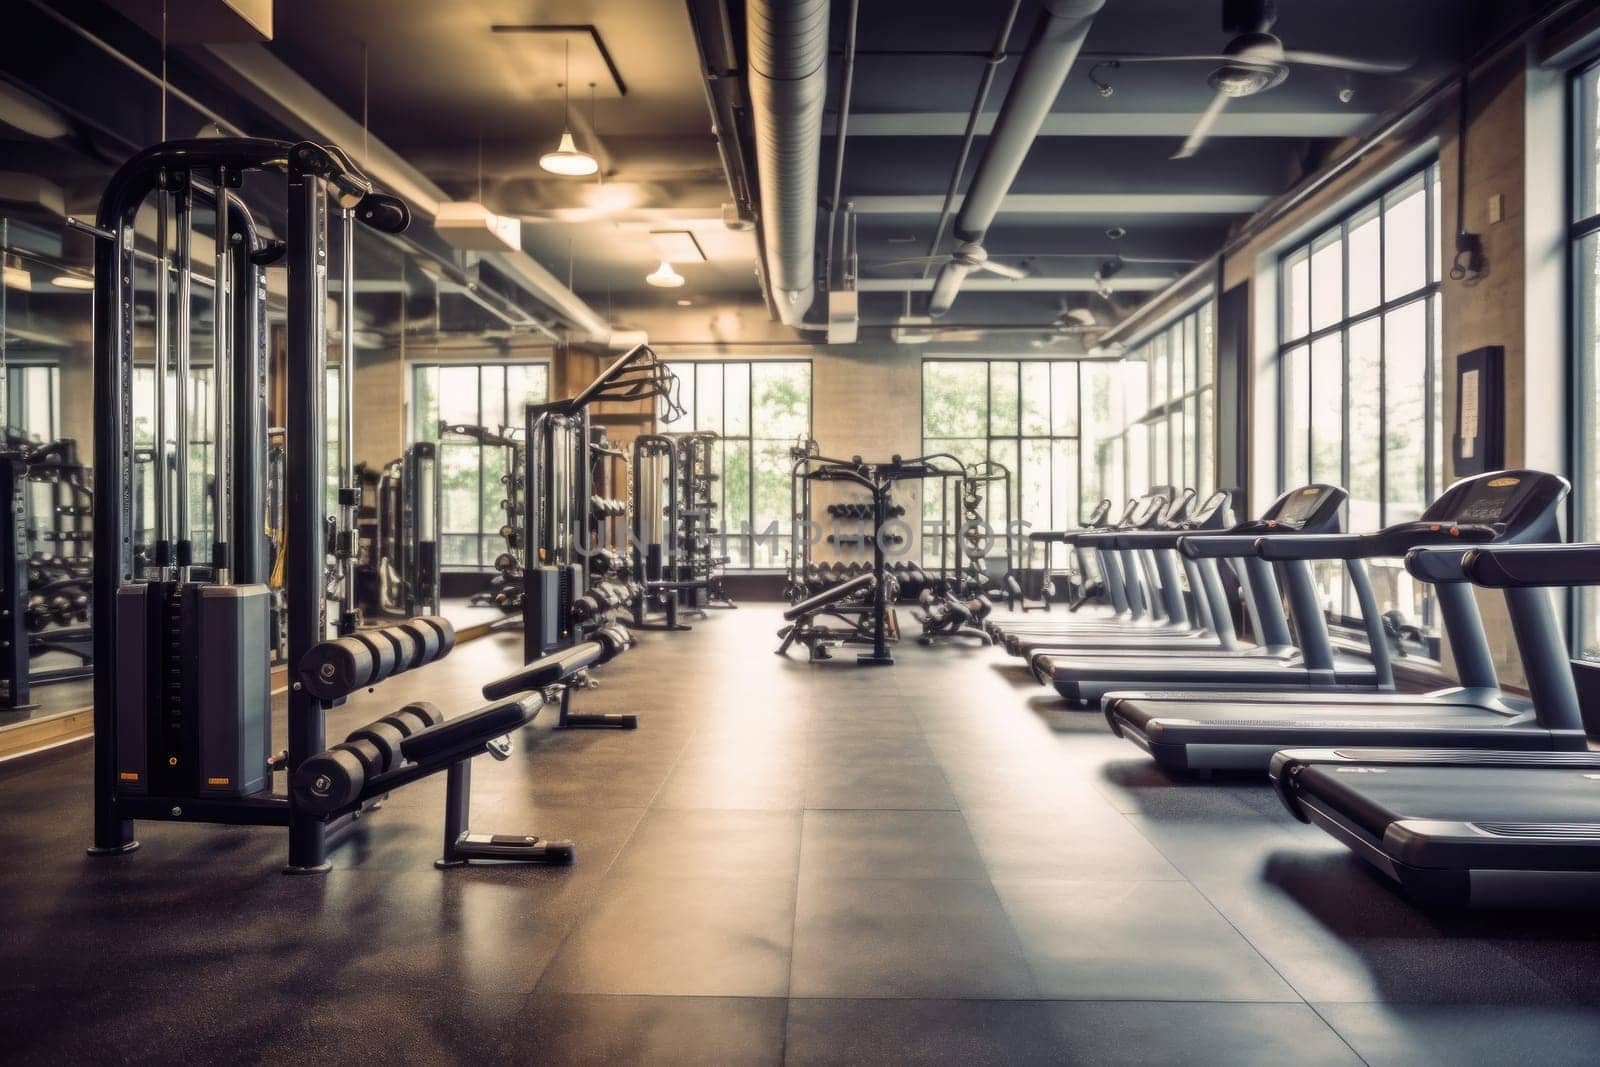 Photo of a blur gym background fitness center by nijieimu